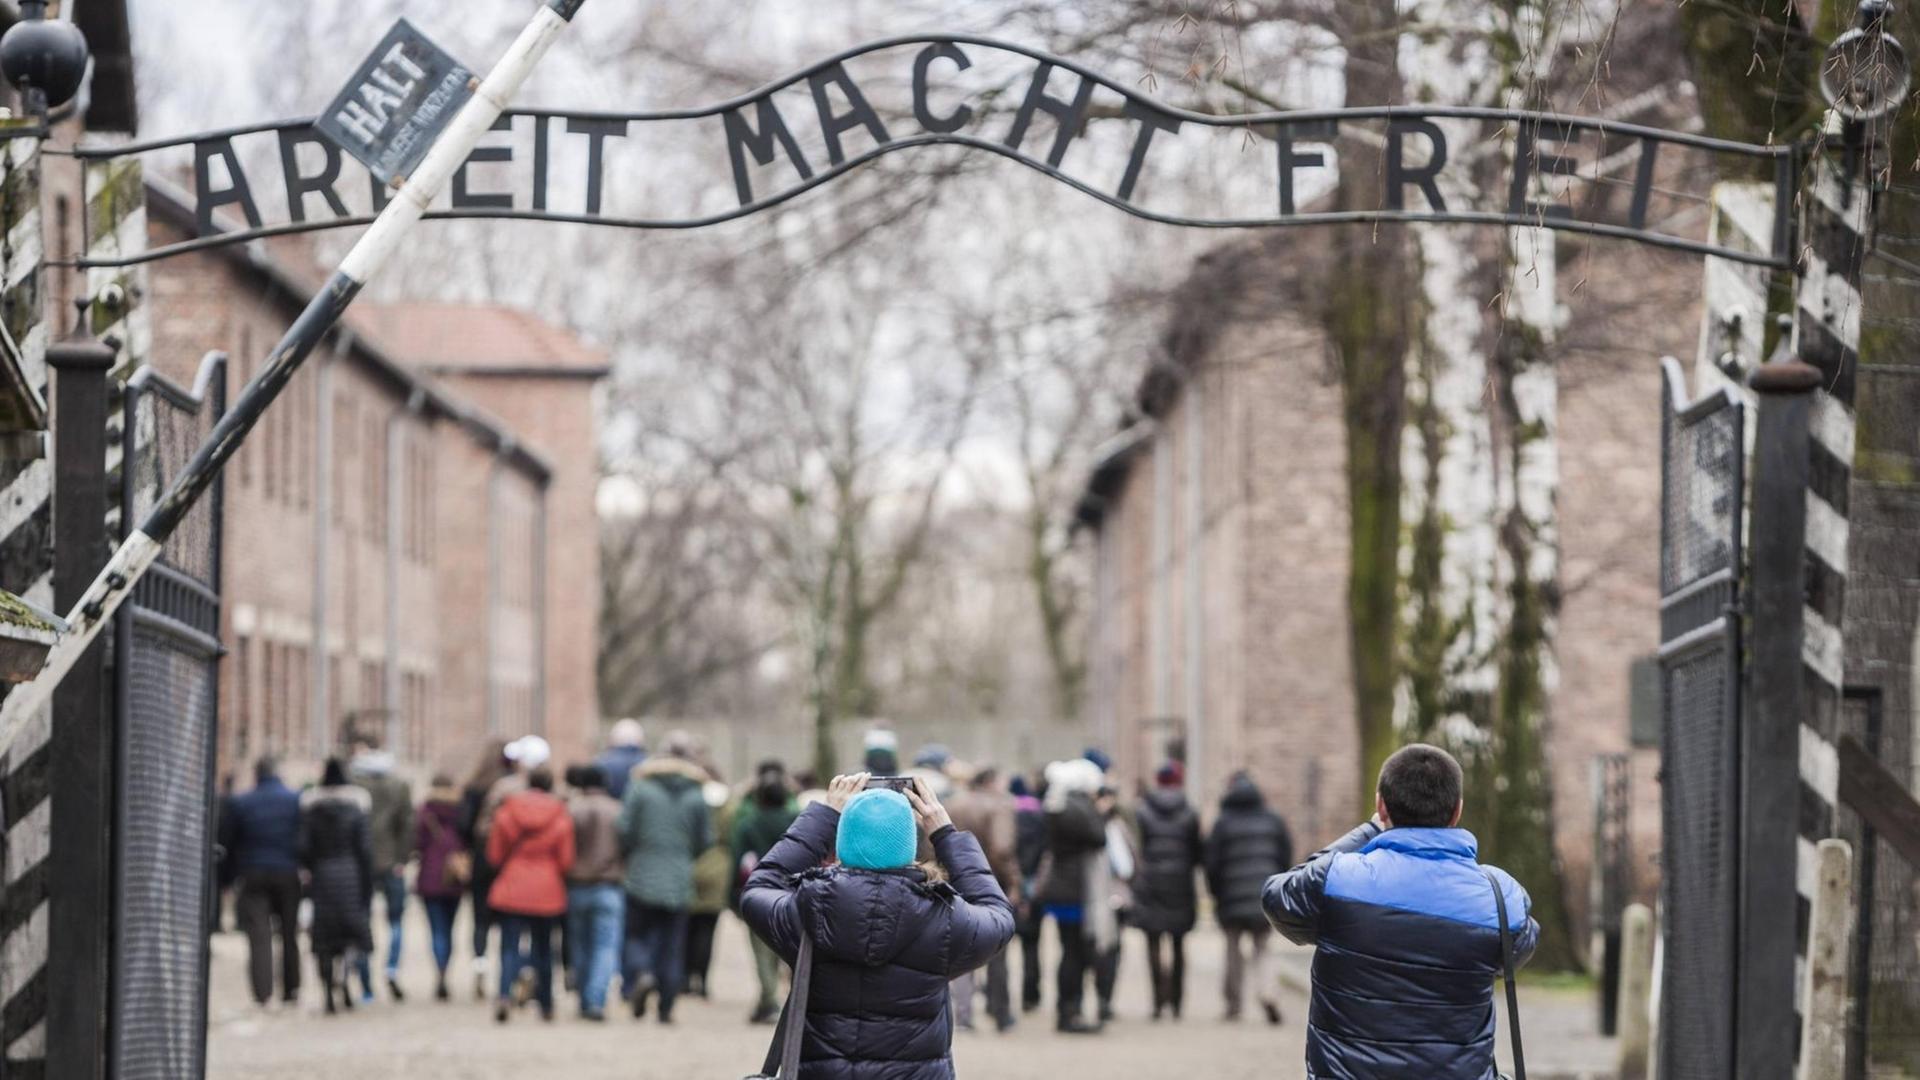 Der Eingang zum ehemaligen Vernichtungslager Auschwitz - über dem Eingang steht "Arbeit macht frei"